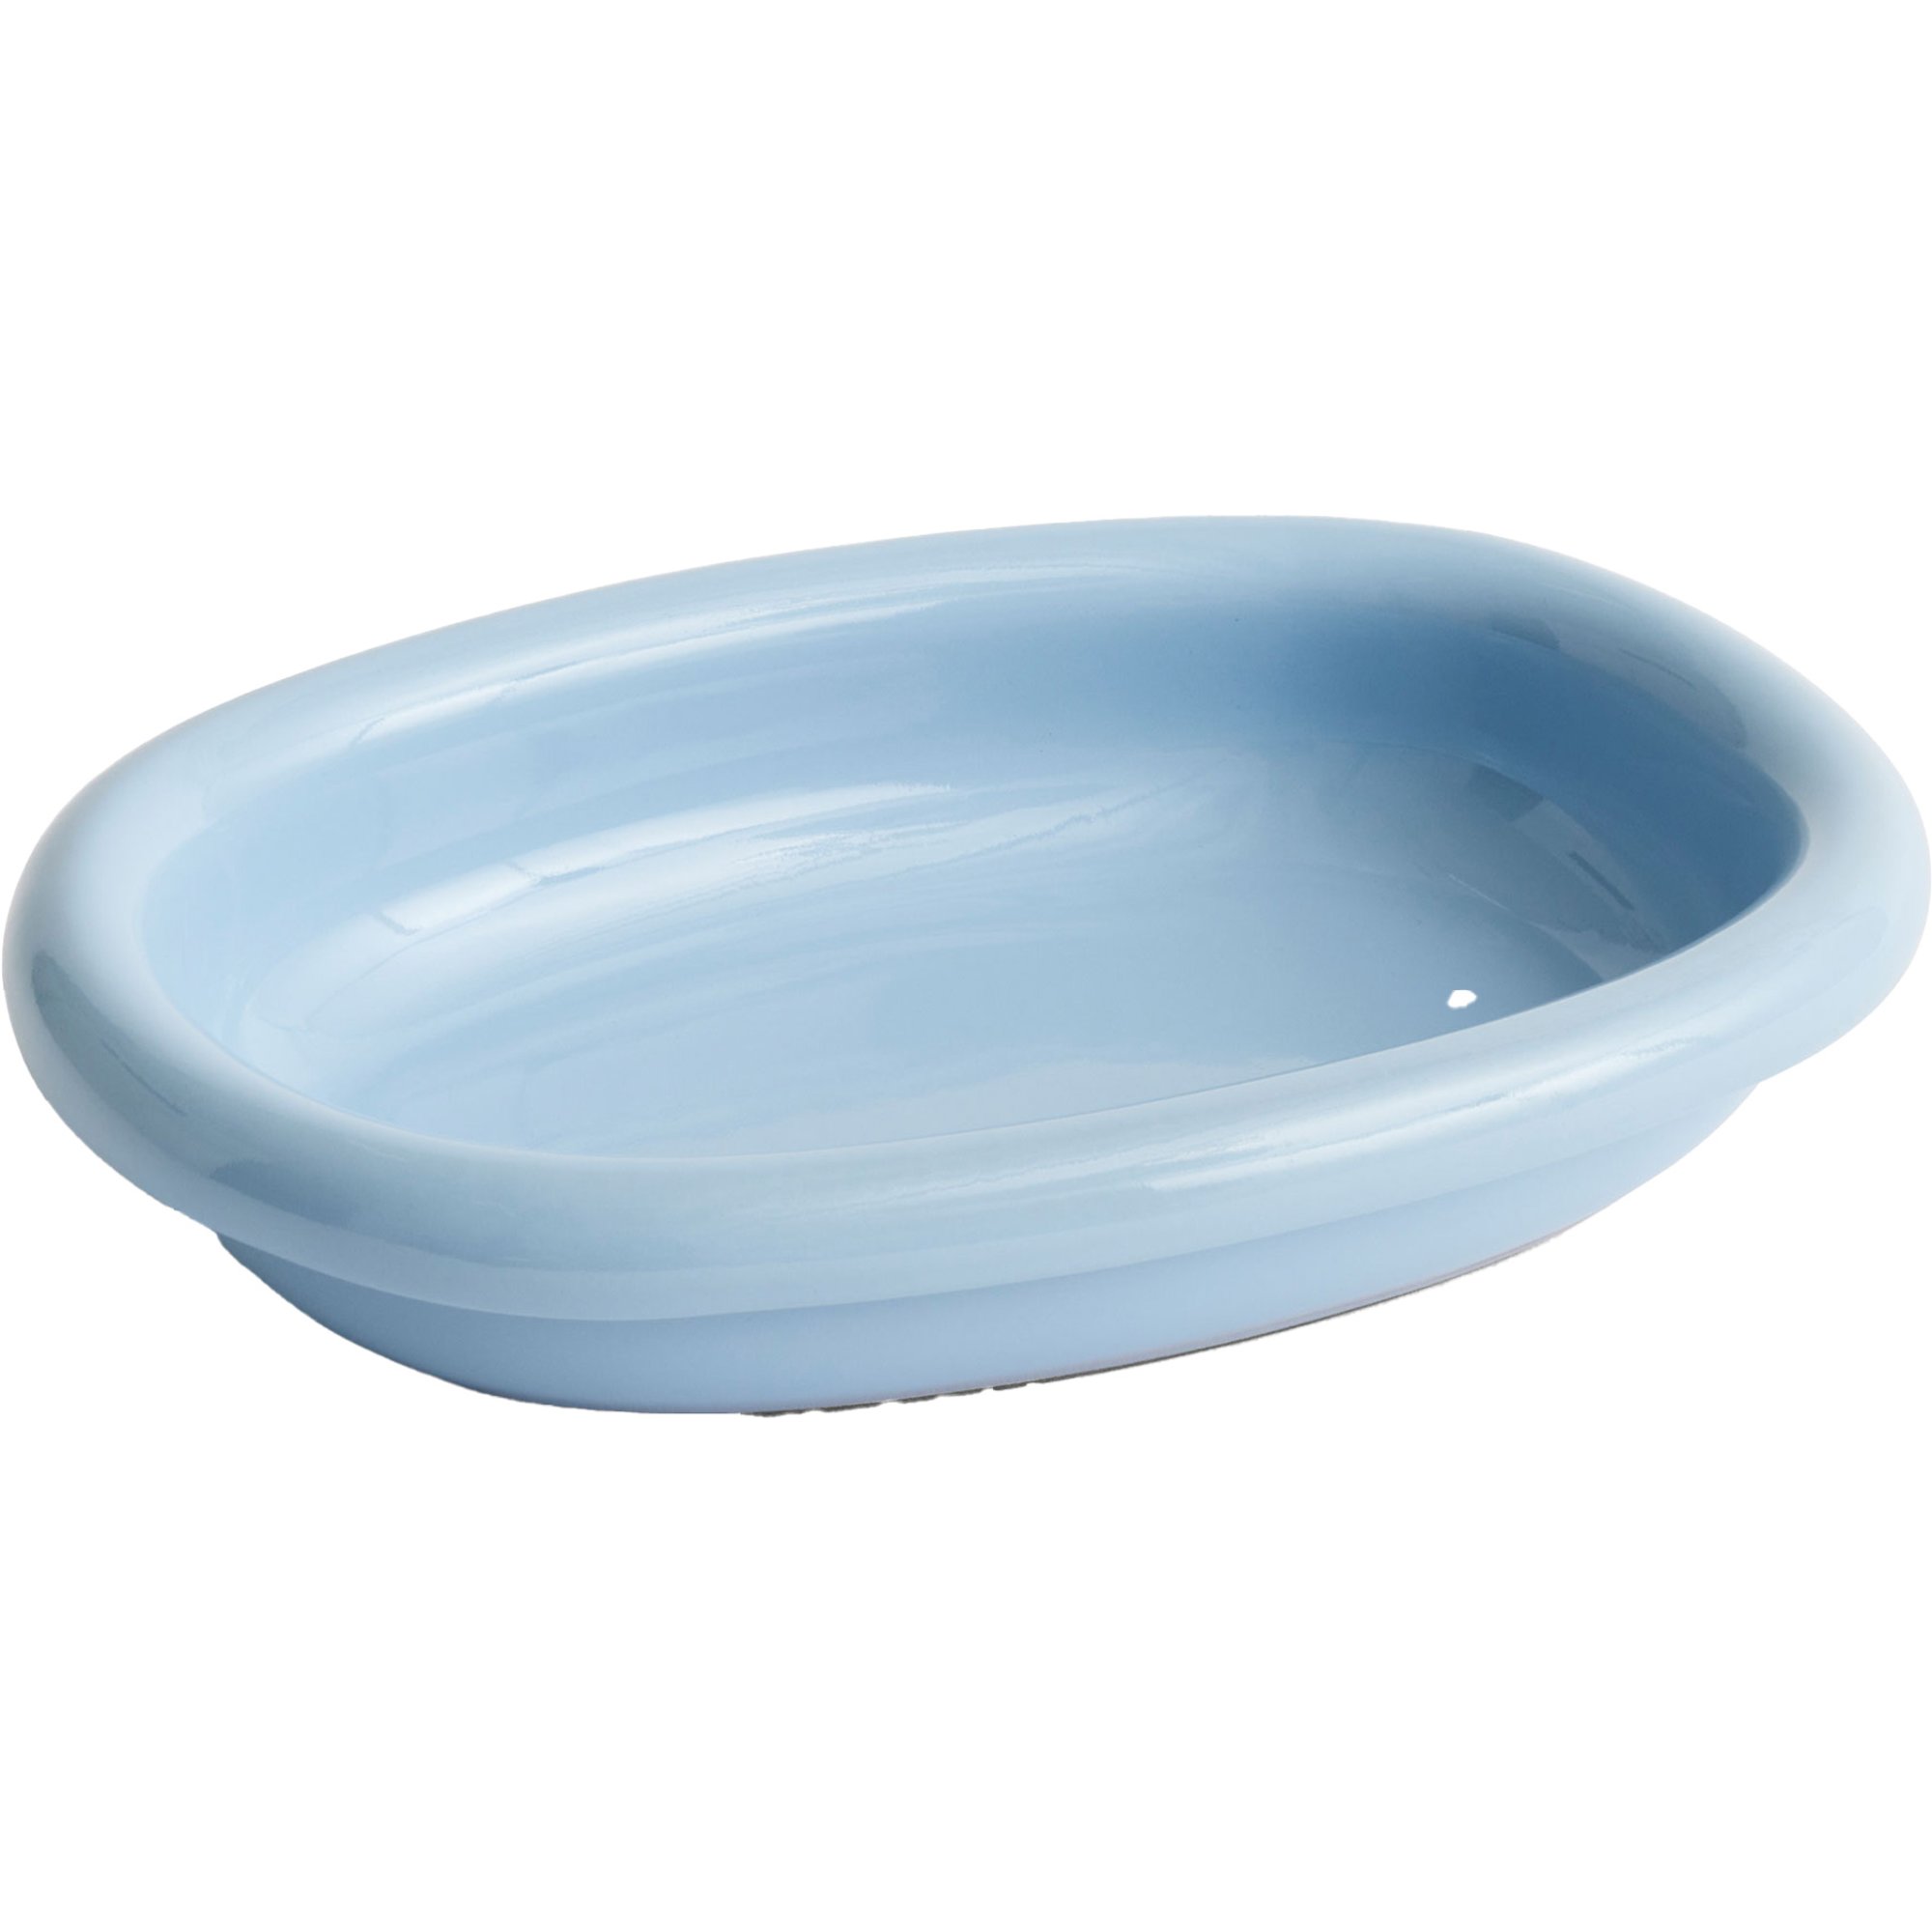 HAY Barro oval tallerken small, lyseblå